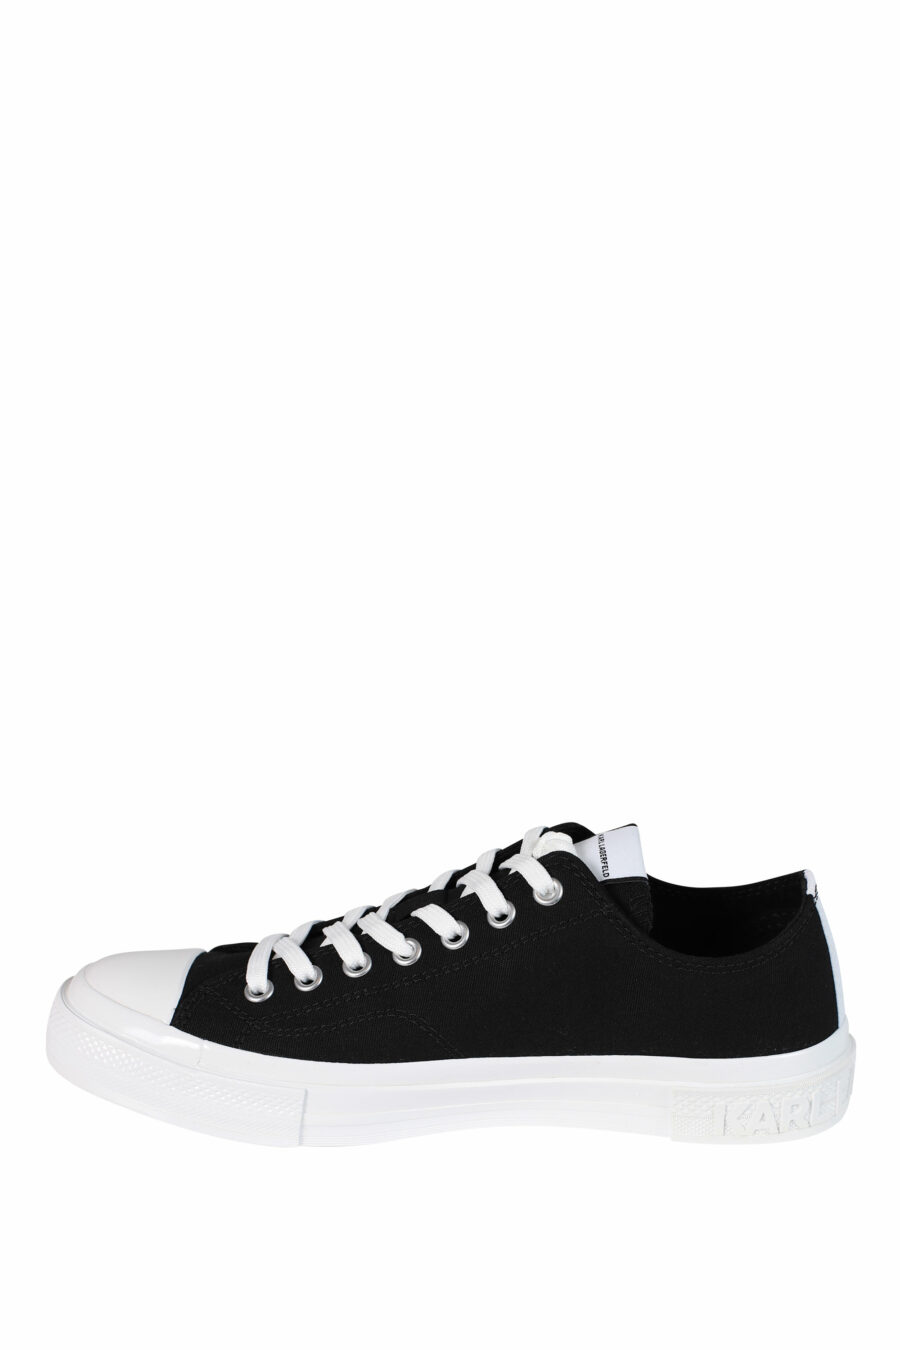 Zapatillas negras con logo "karl" y suela blanca - 5059529249655 3